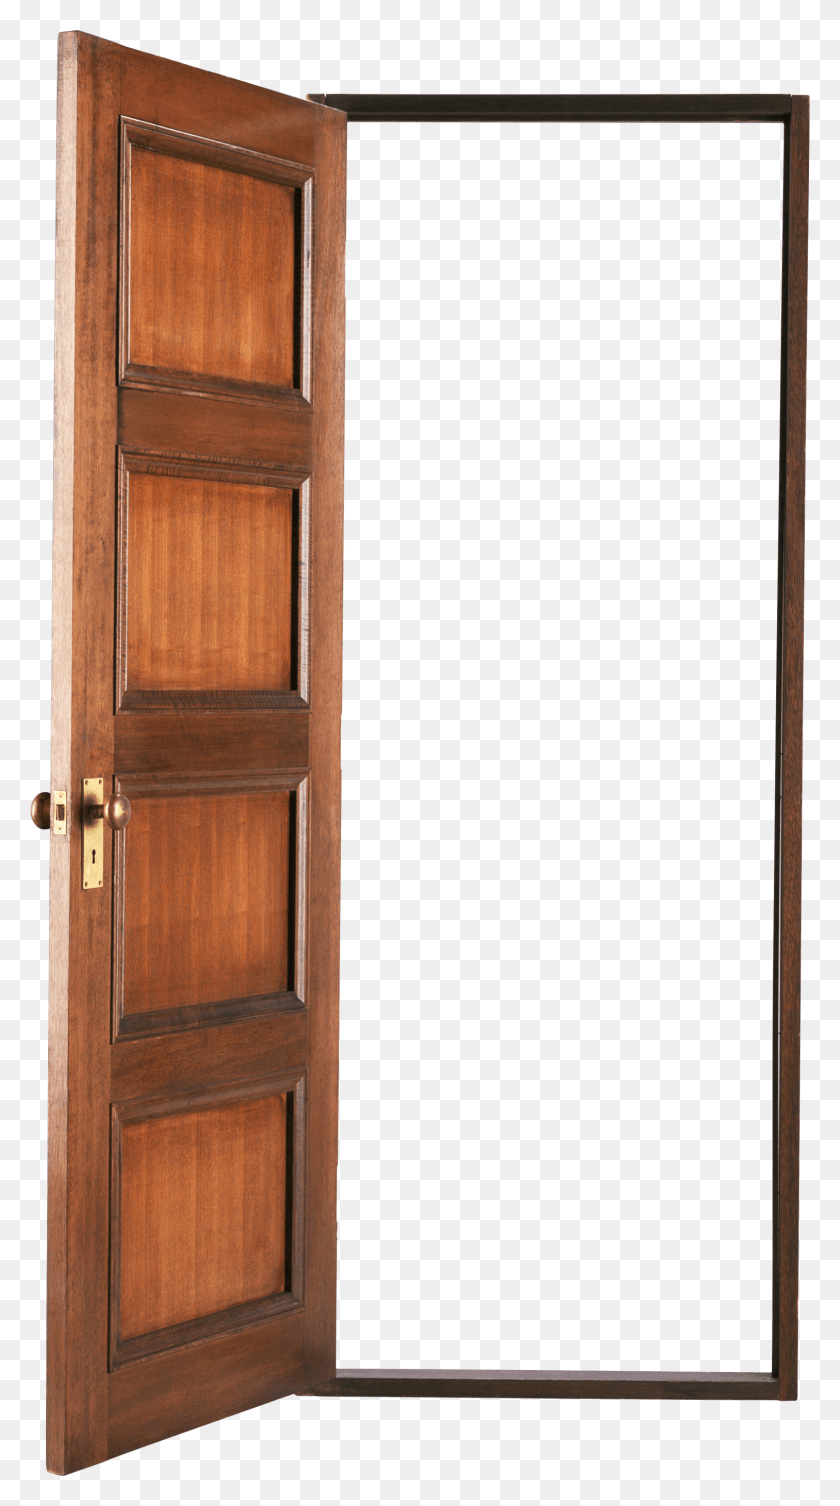 1515x2810 Open Door Classical Open Door Transparent Background, Door, Wood, Hardwood HD PNG Download